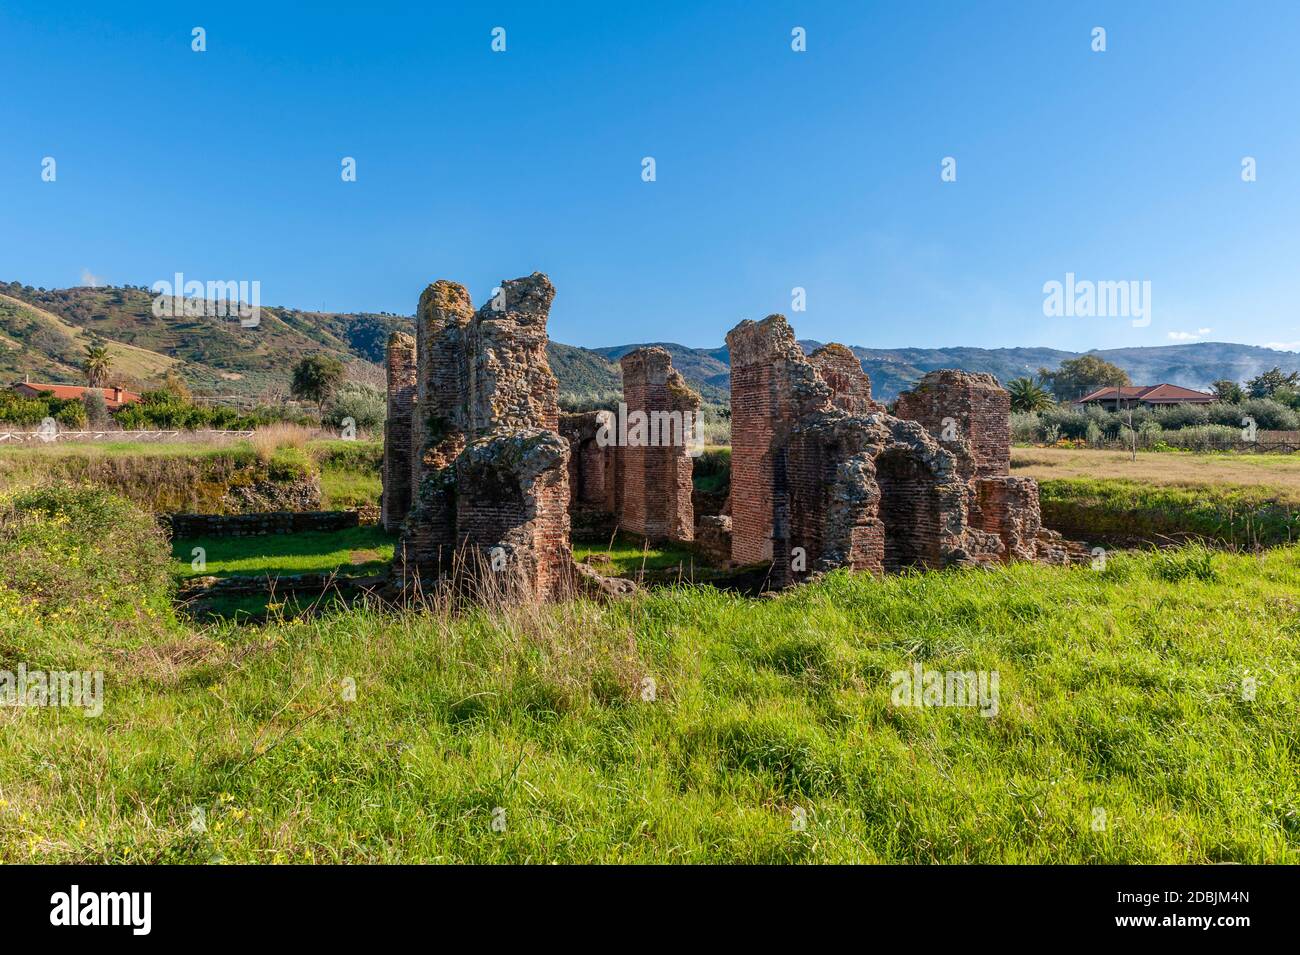 Italia Calabria - Curinga Acconia - Terme romane III-IV secolo AD - bagni privati che fanno parte di un grande villa monumentale Foto Stock